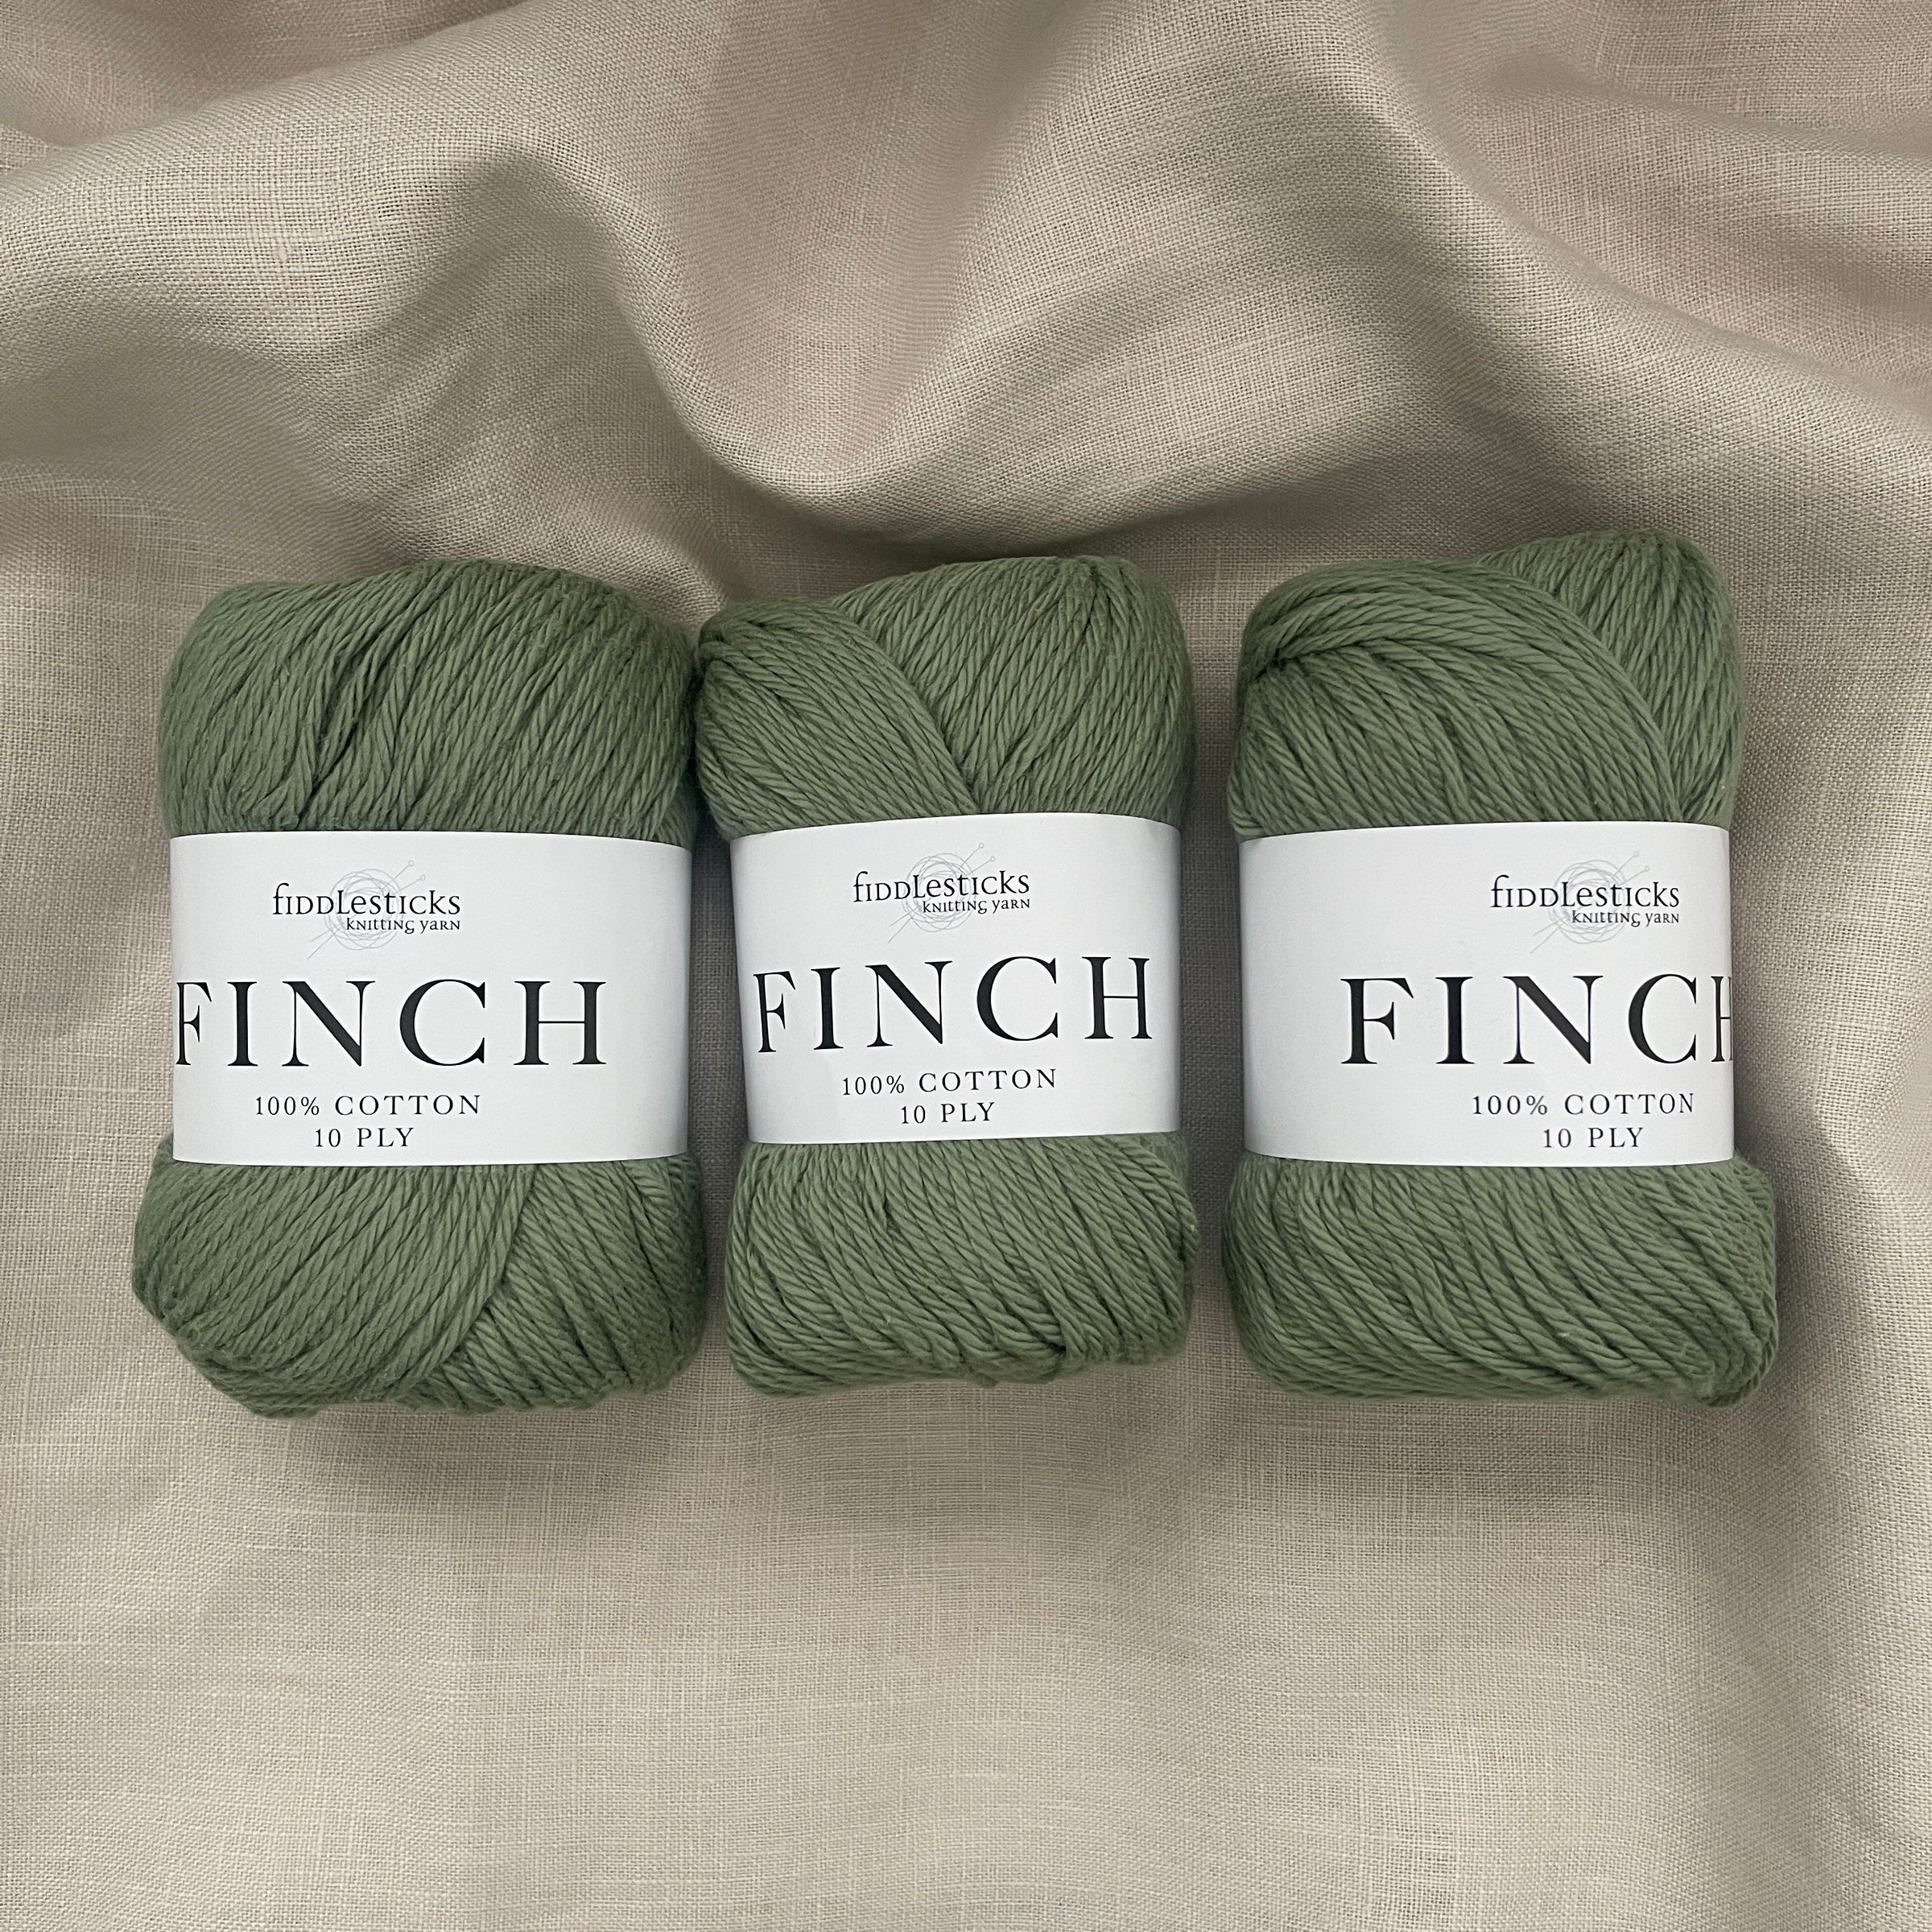 Fiddlesticks finch aran cotton is sage shade